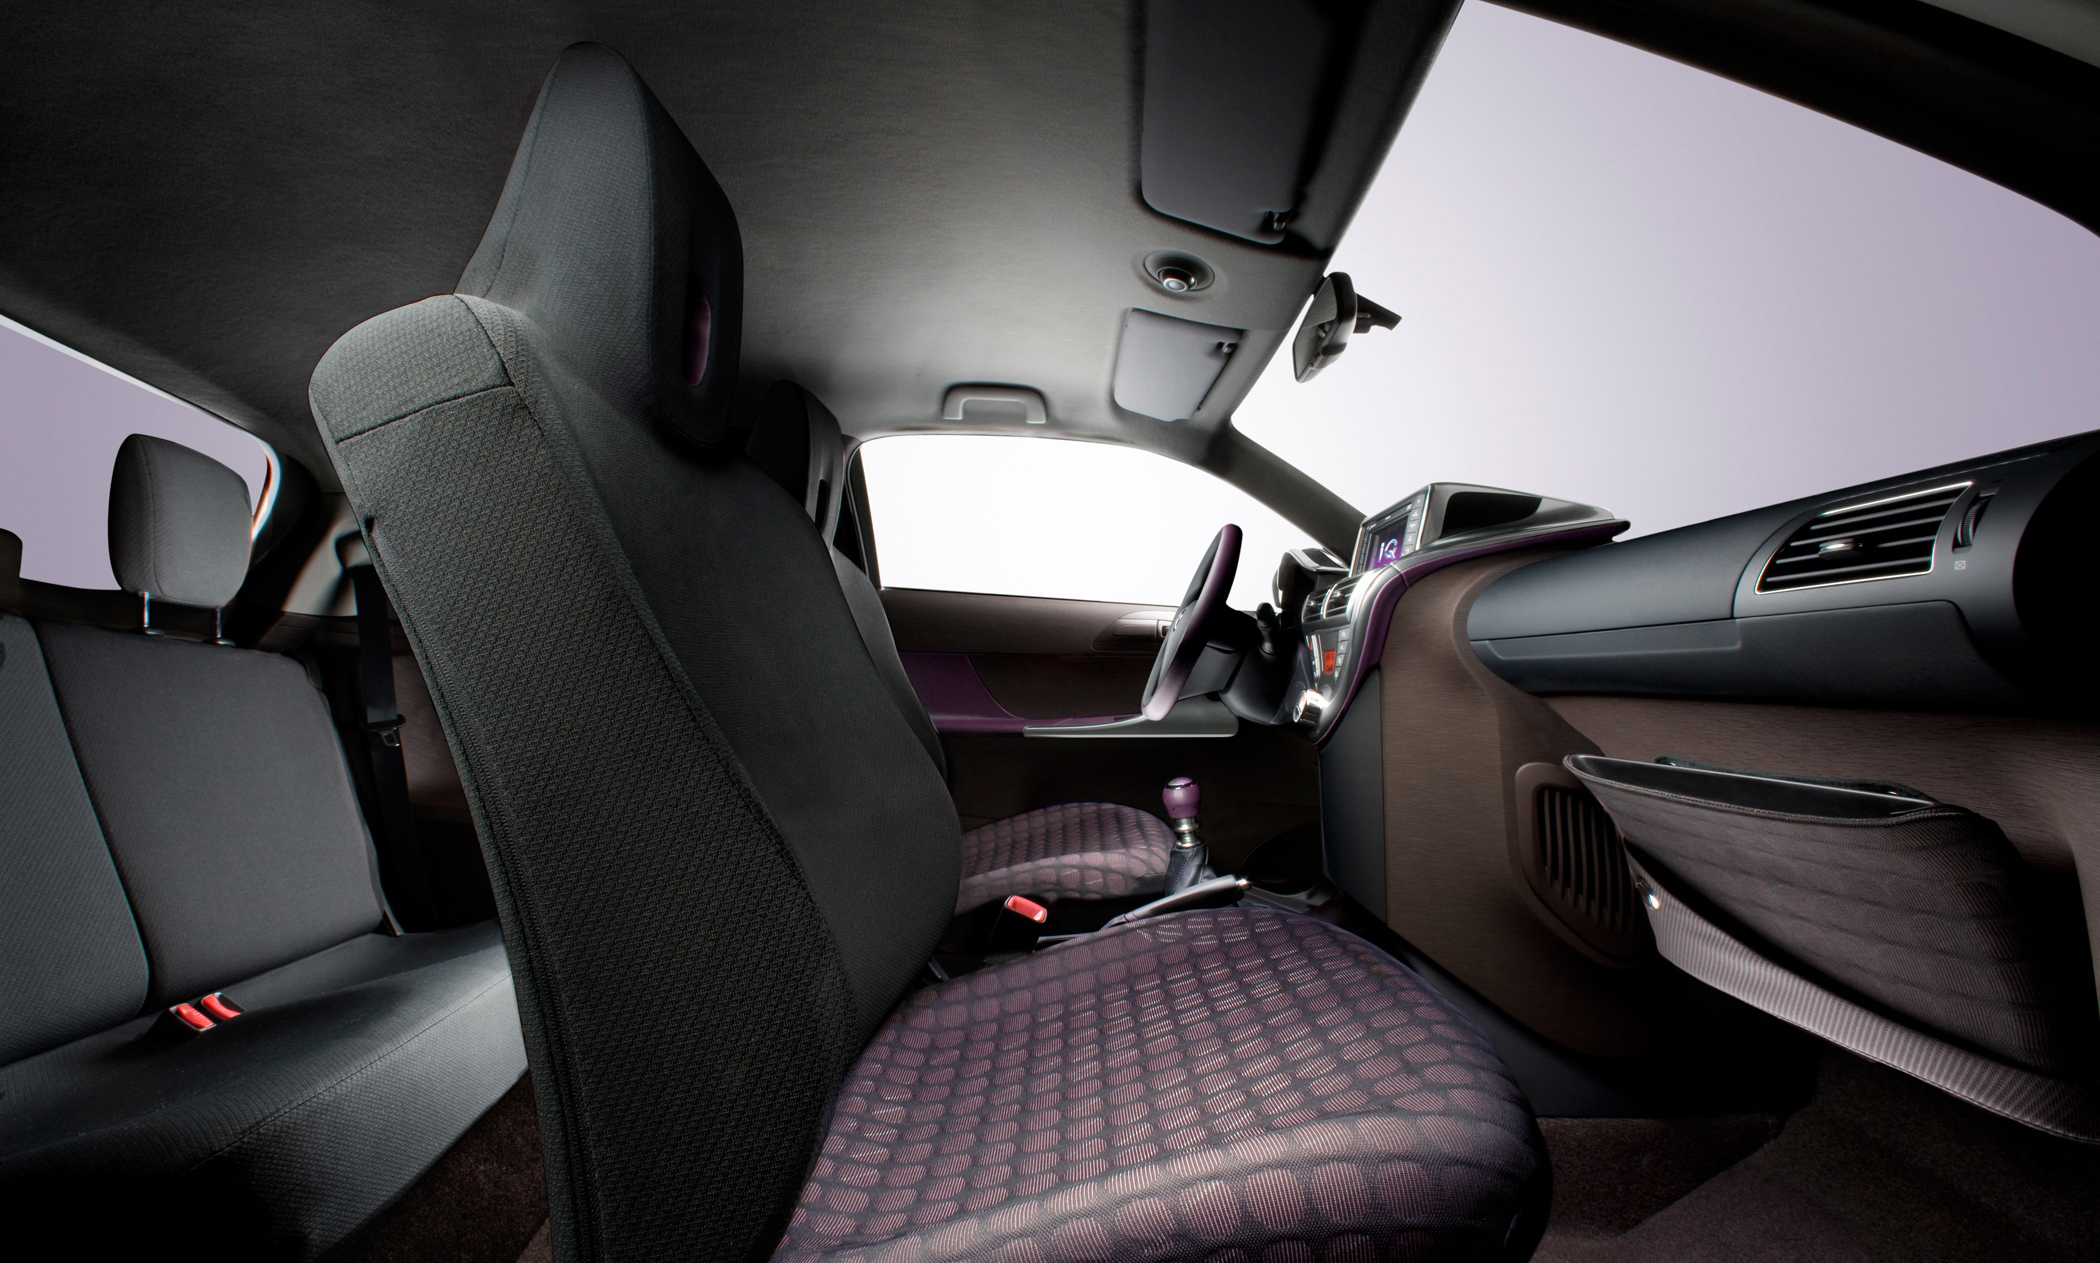 Toyota iQ interior